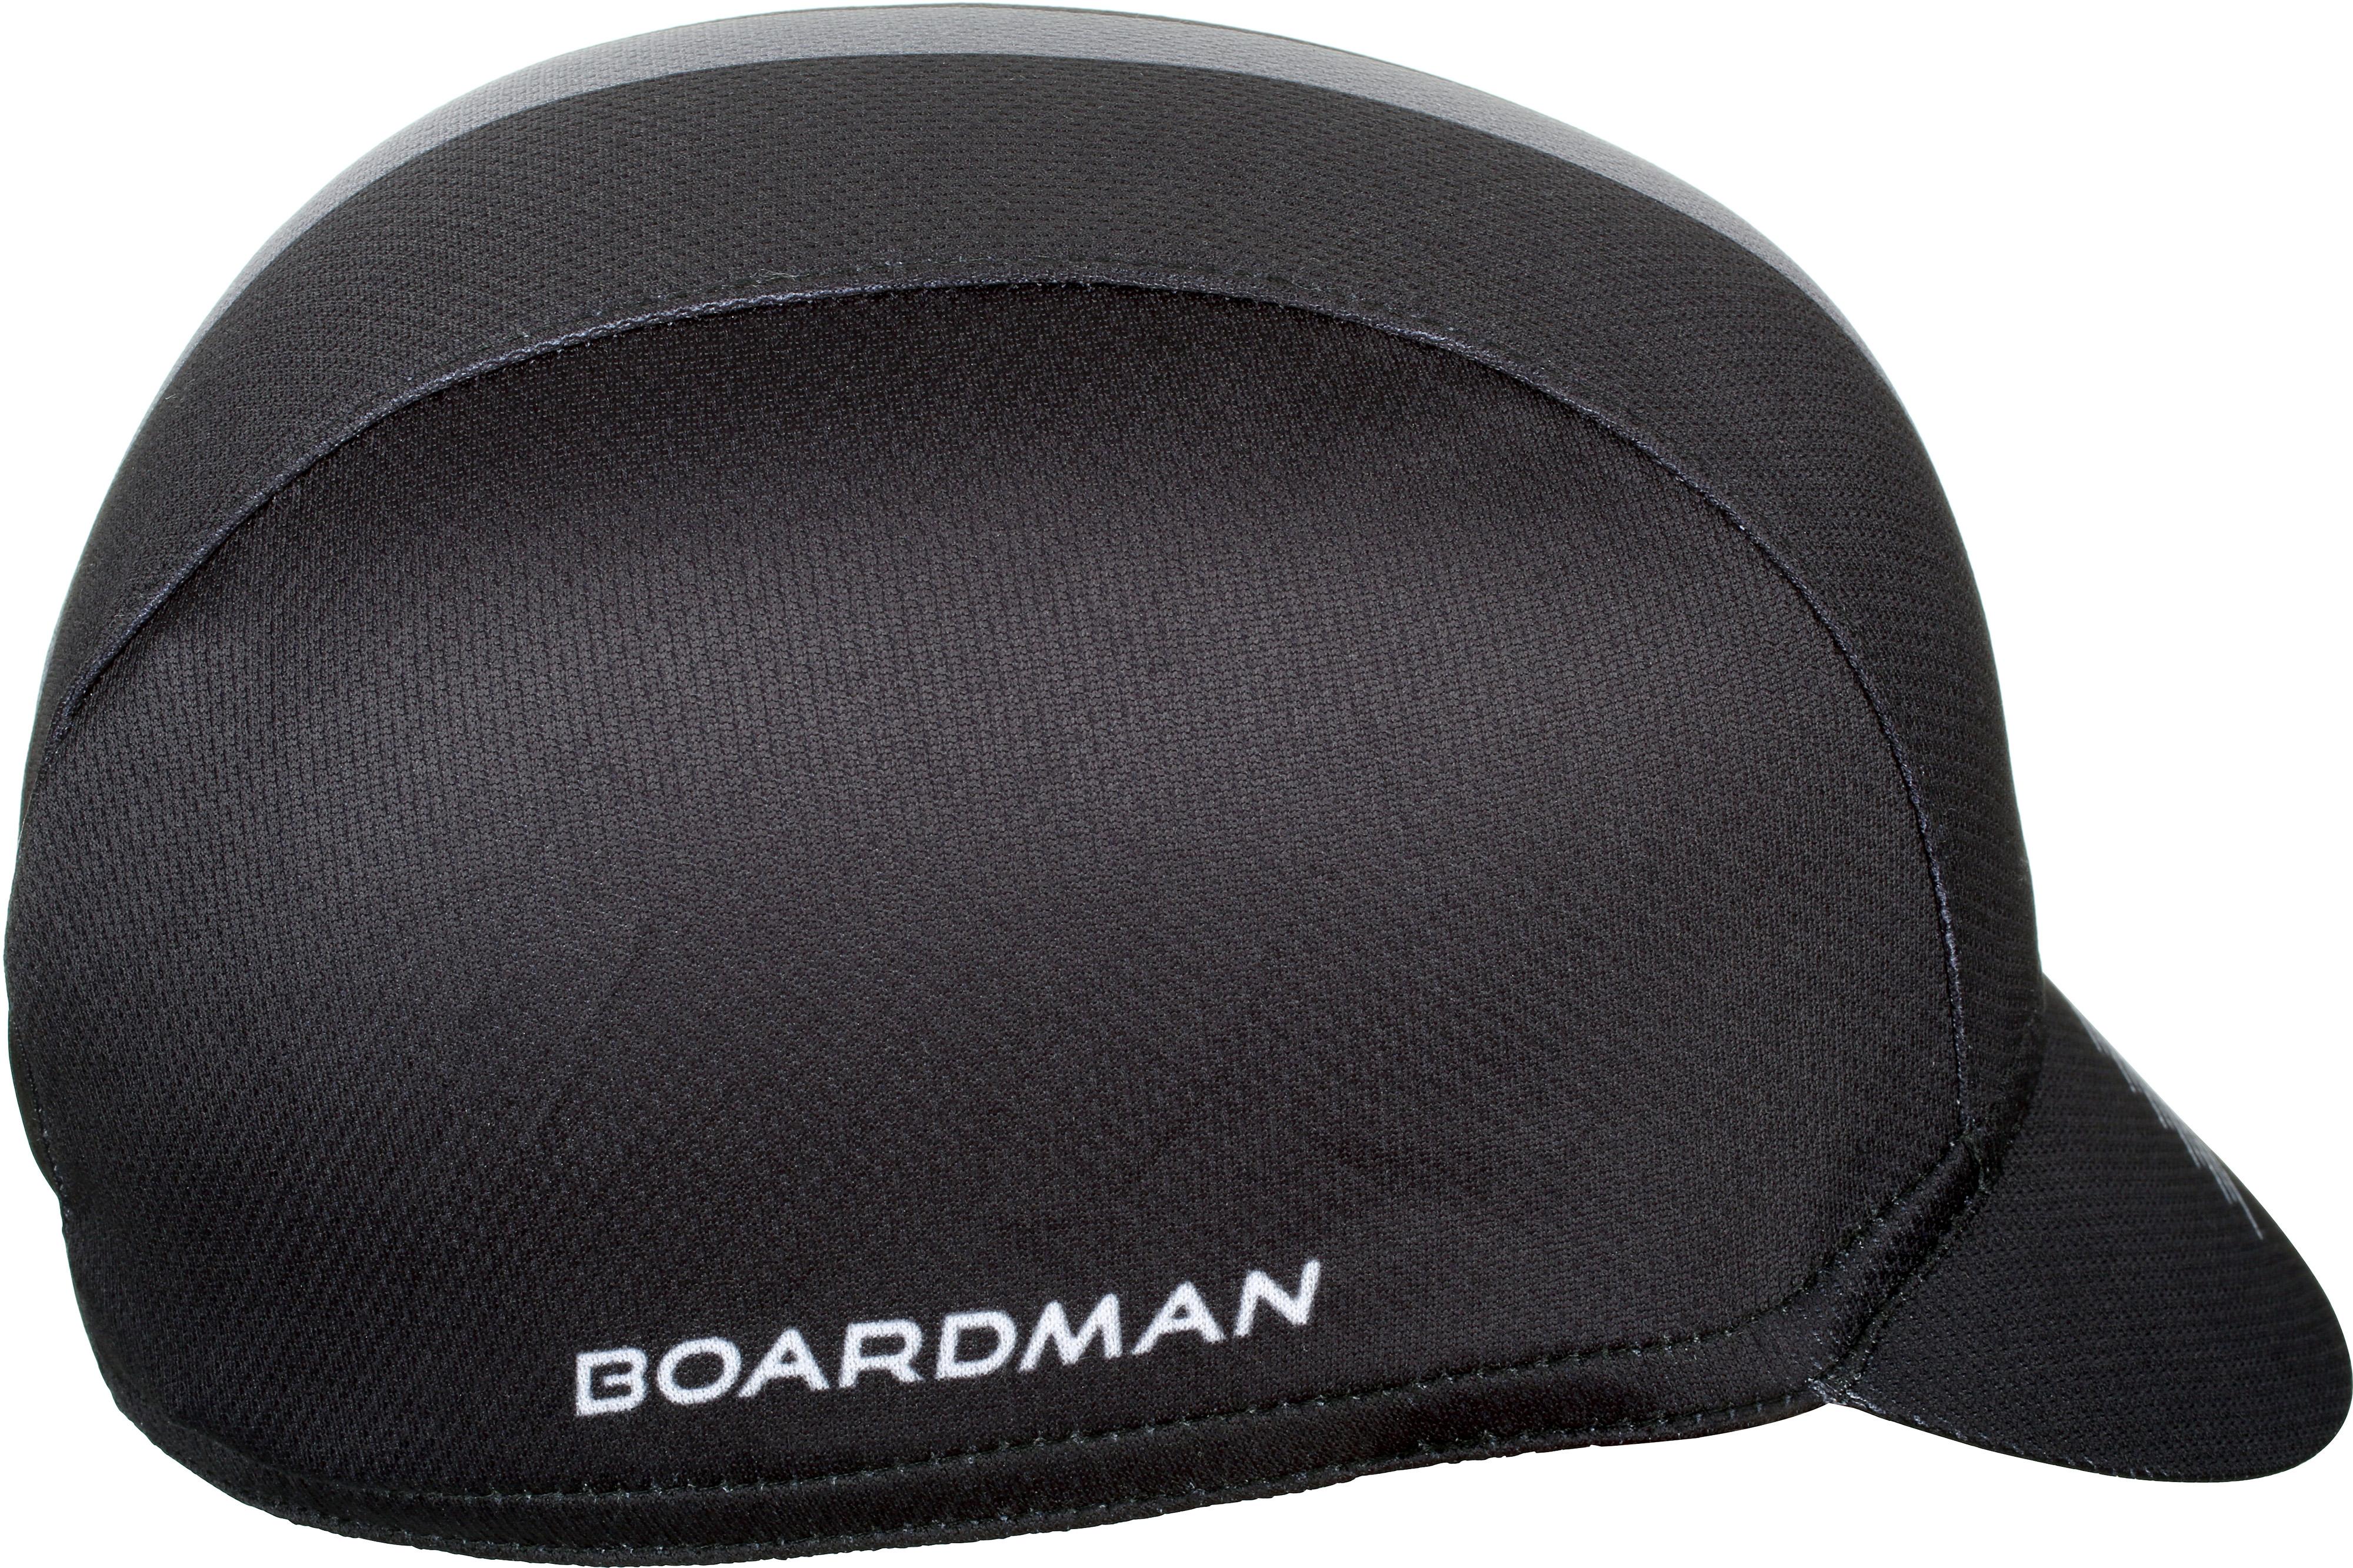 Boardman Cycle Cap Black/Grey Halfords UK